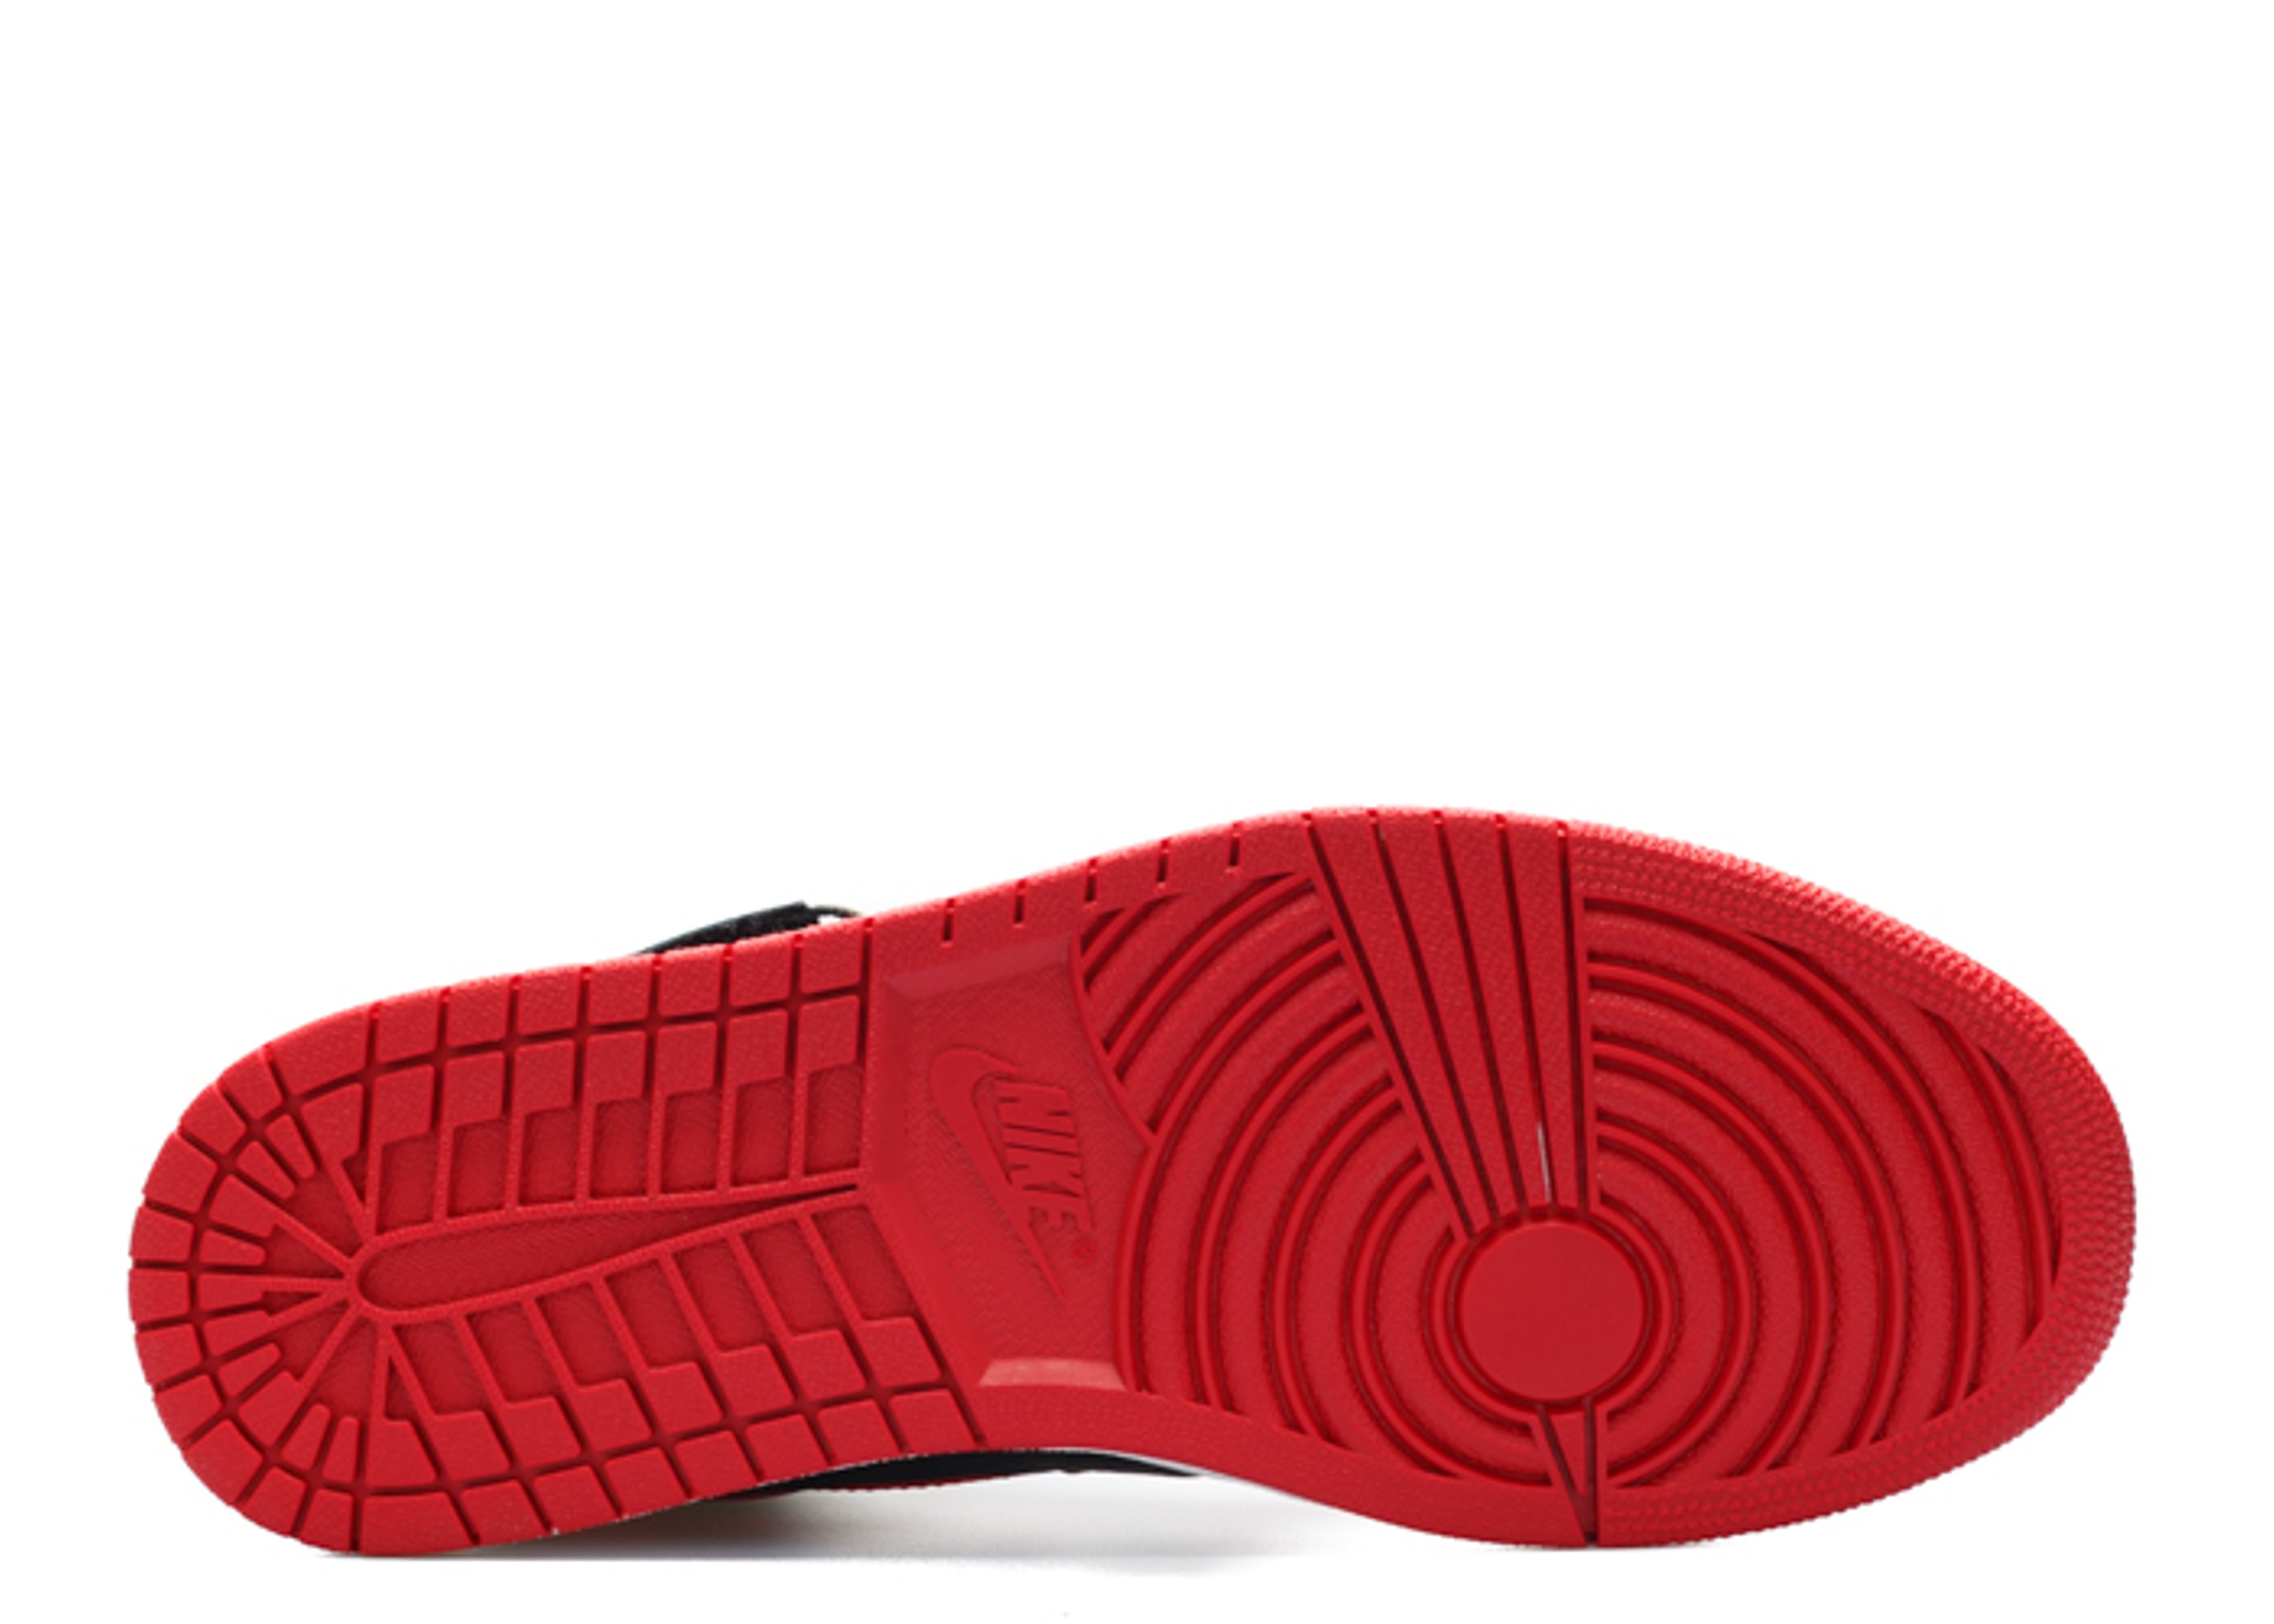 Size+10.5+-+Jordan+1+High+Strap+Black+Gym+Red for sale online